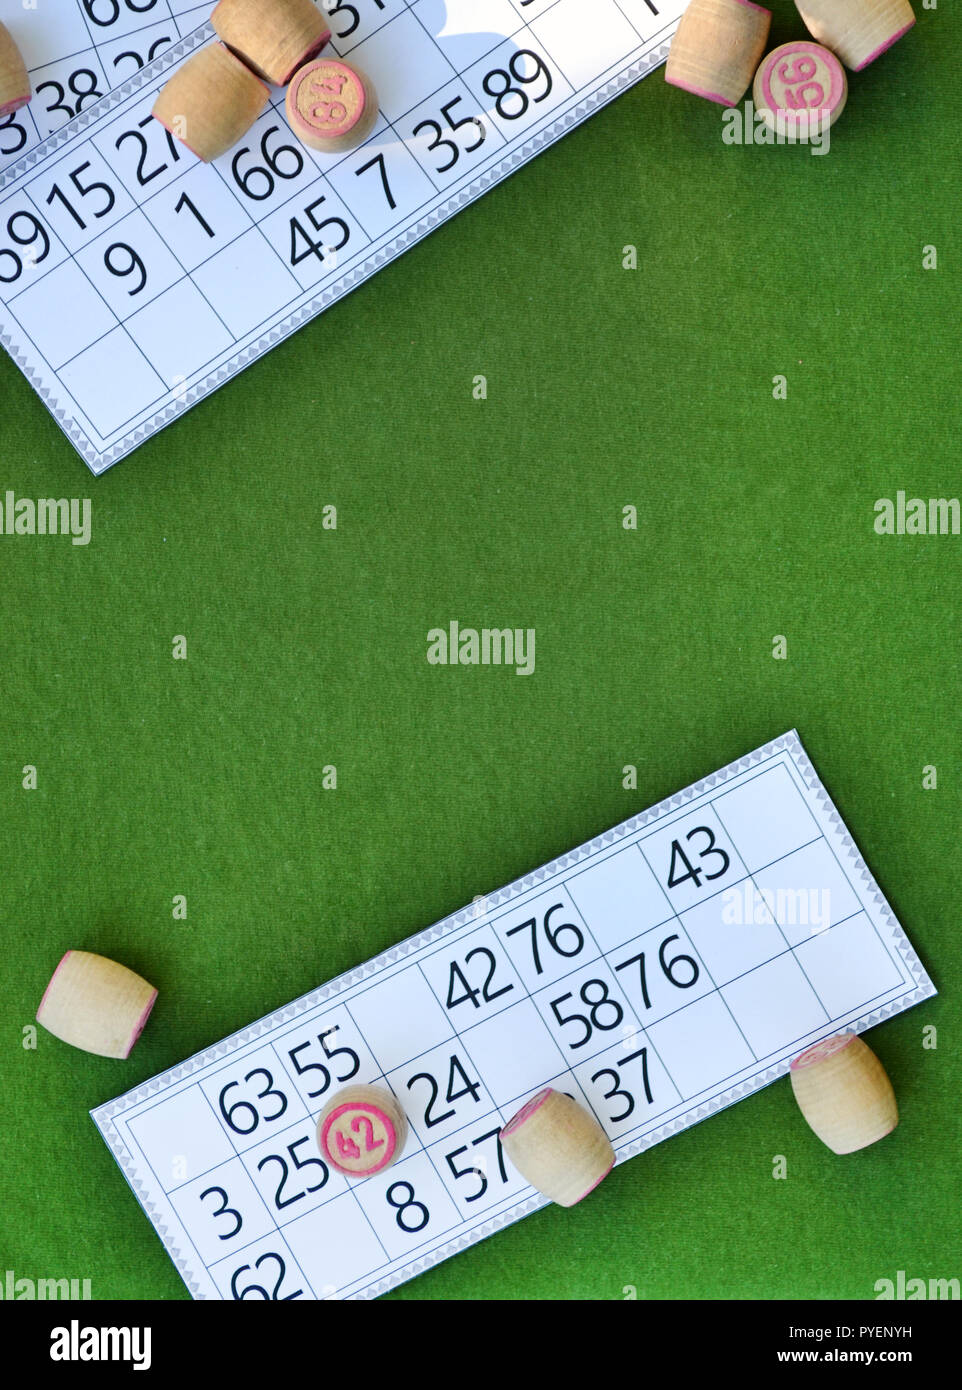 Das Spiel von Bingo besteht aus Karten und Fässer mit Zahlen auf grünem Hintergrund, das Spiel russische lotto mit Kopie Raum Stockfoto